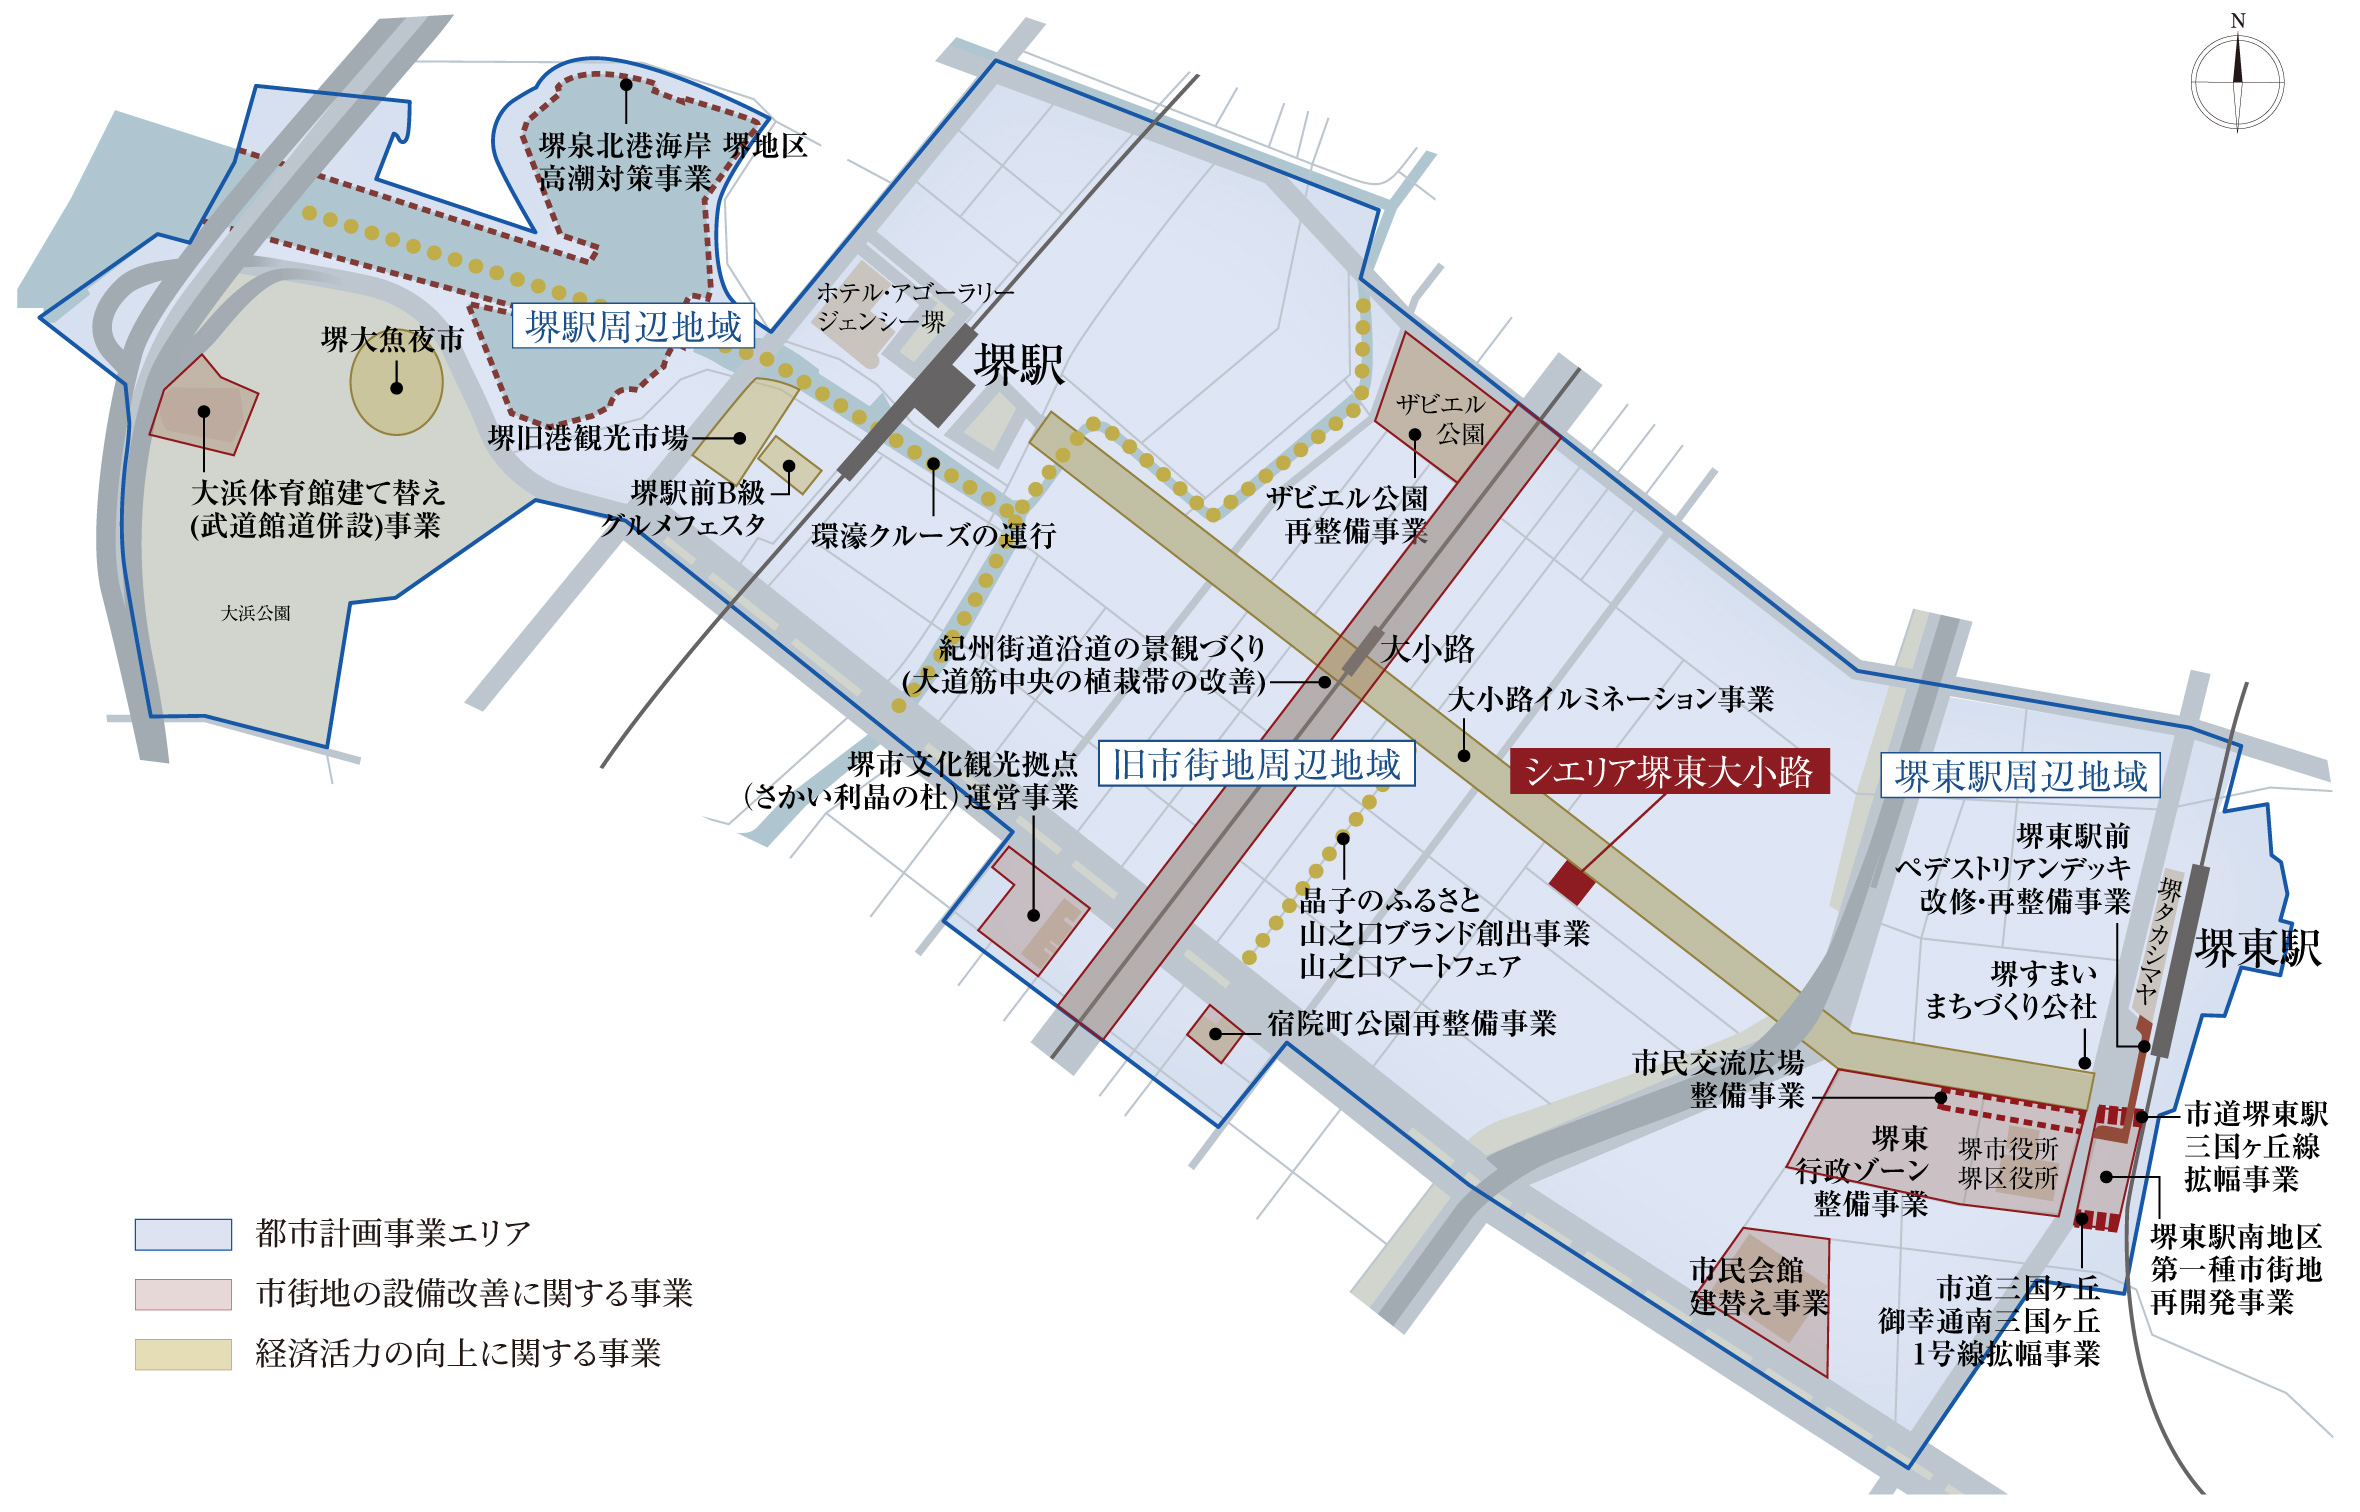 都市計画概念図（堺市中心市街地活性化基本計画を元に作成）